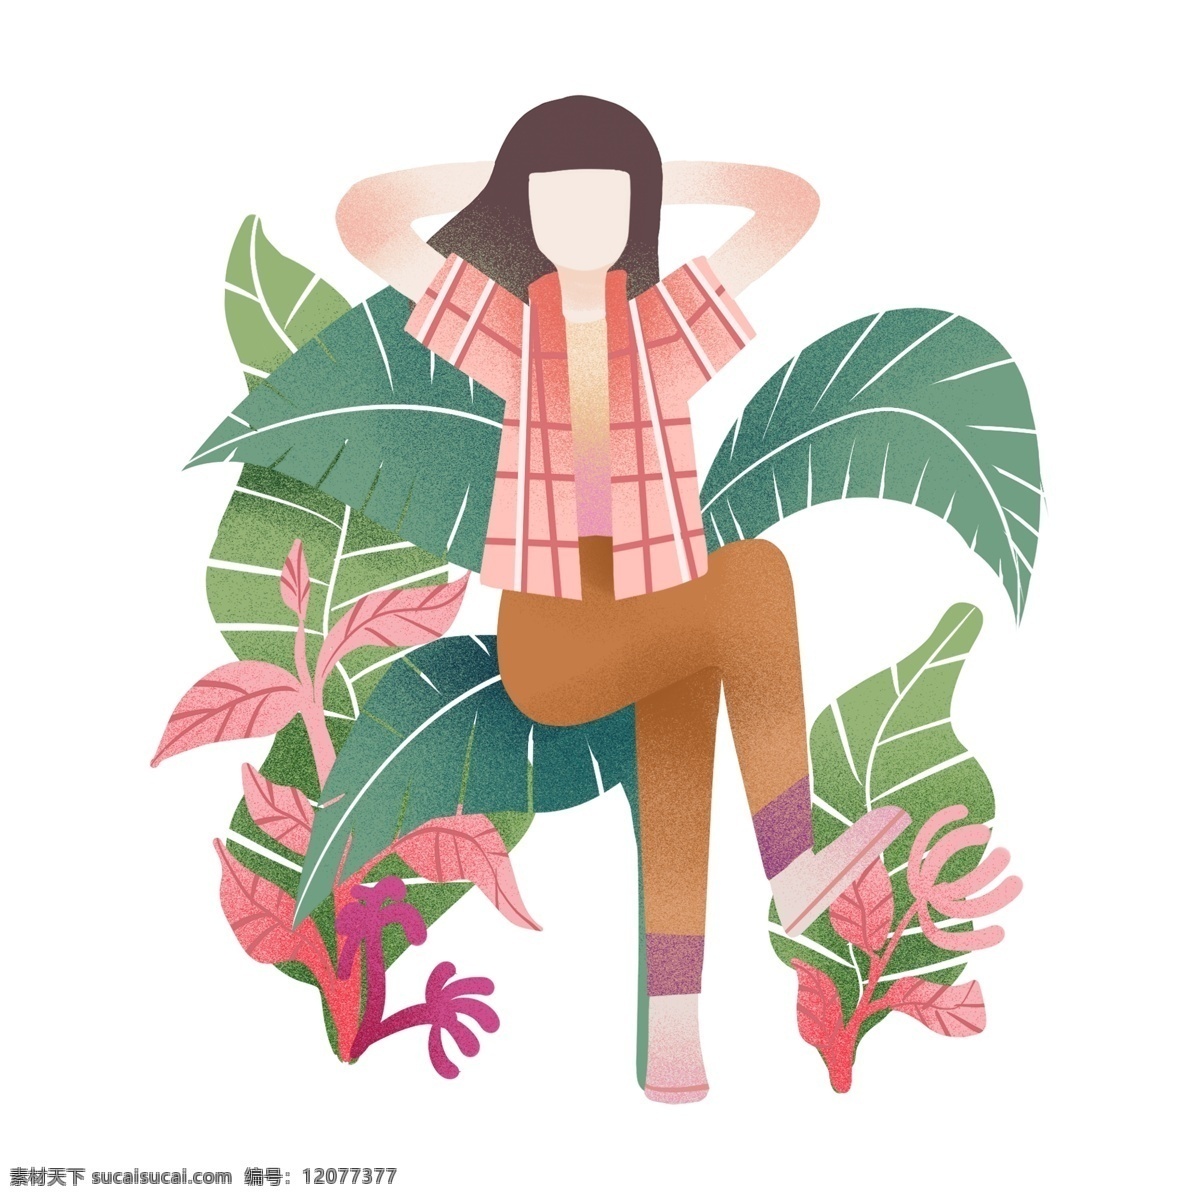 踏青 漂亮 小女孩 踏青人物插画 漂亮的小女孩 绿色的叶子 植物装饰 红色的小花 卡通人物 春天